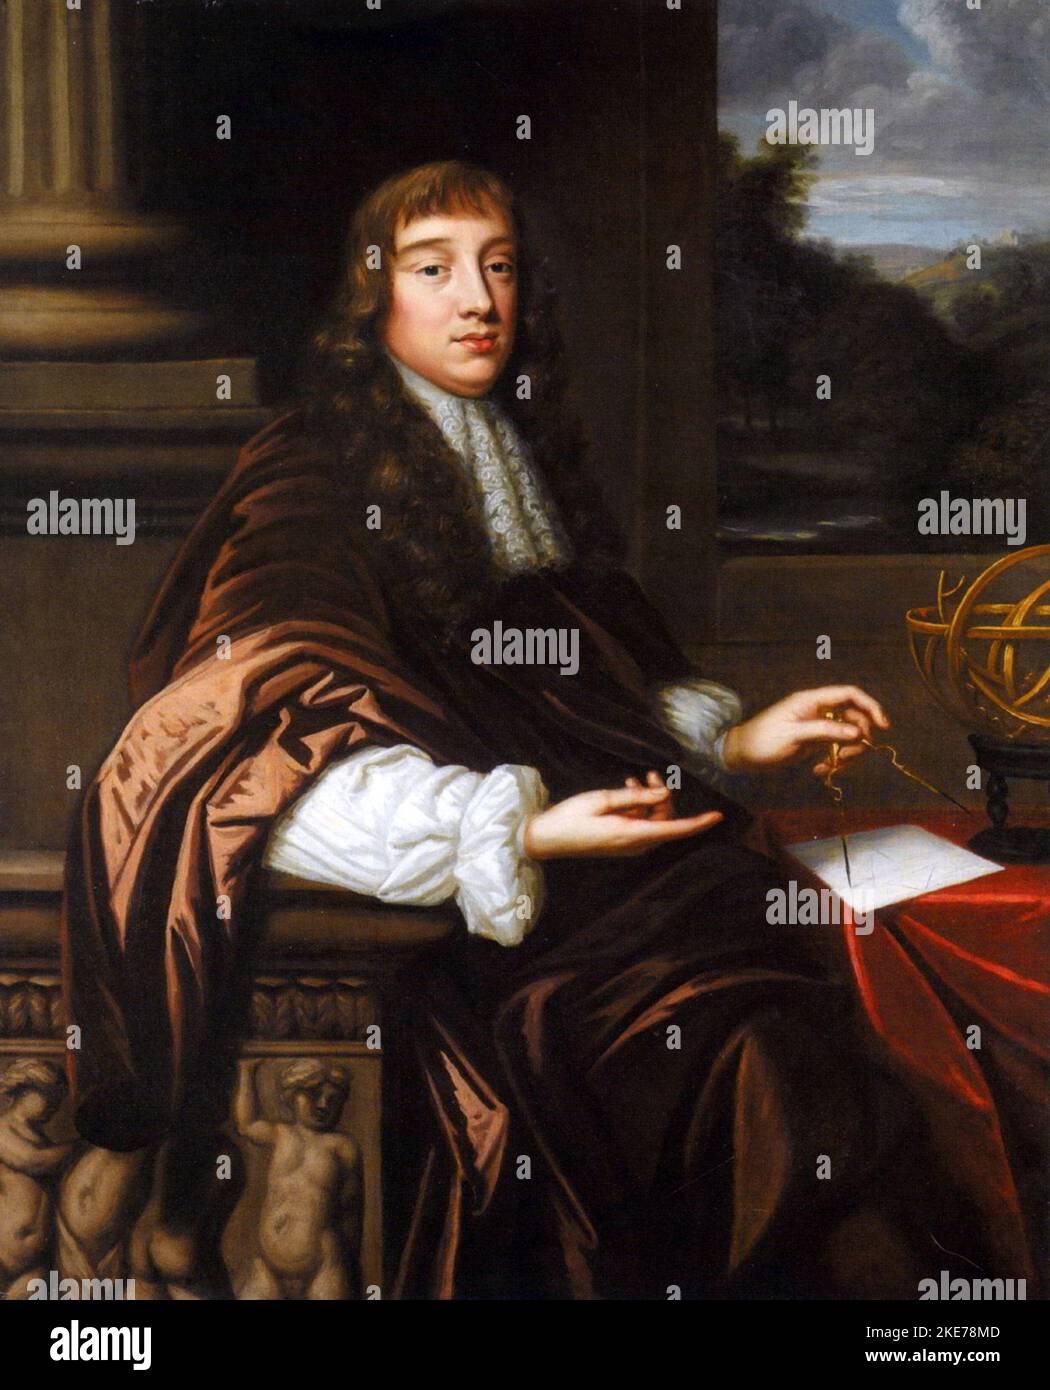 Robert Hooke (1635 – 1703) Polymath anglais, cette peinture est discutée comme étant le portrait le plus probable de Robert Hooke mais pas prouvé. Banque D'Images